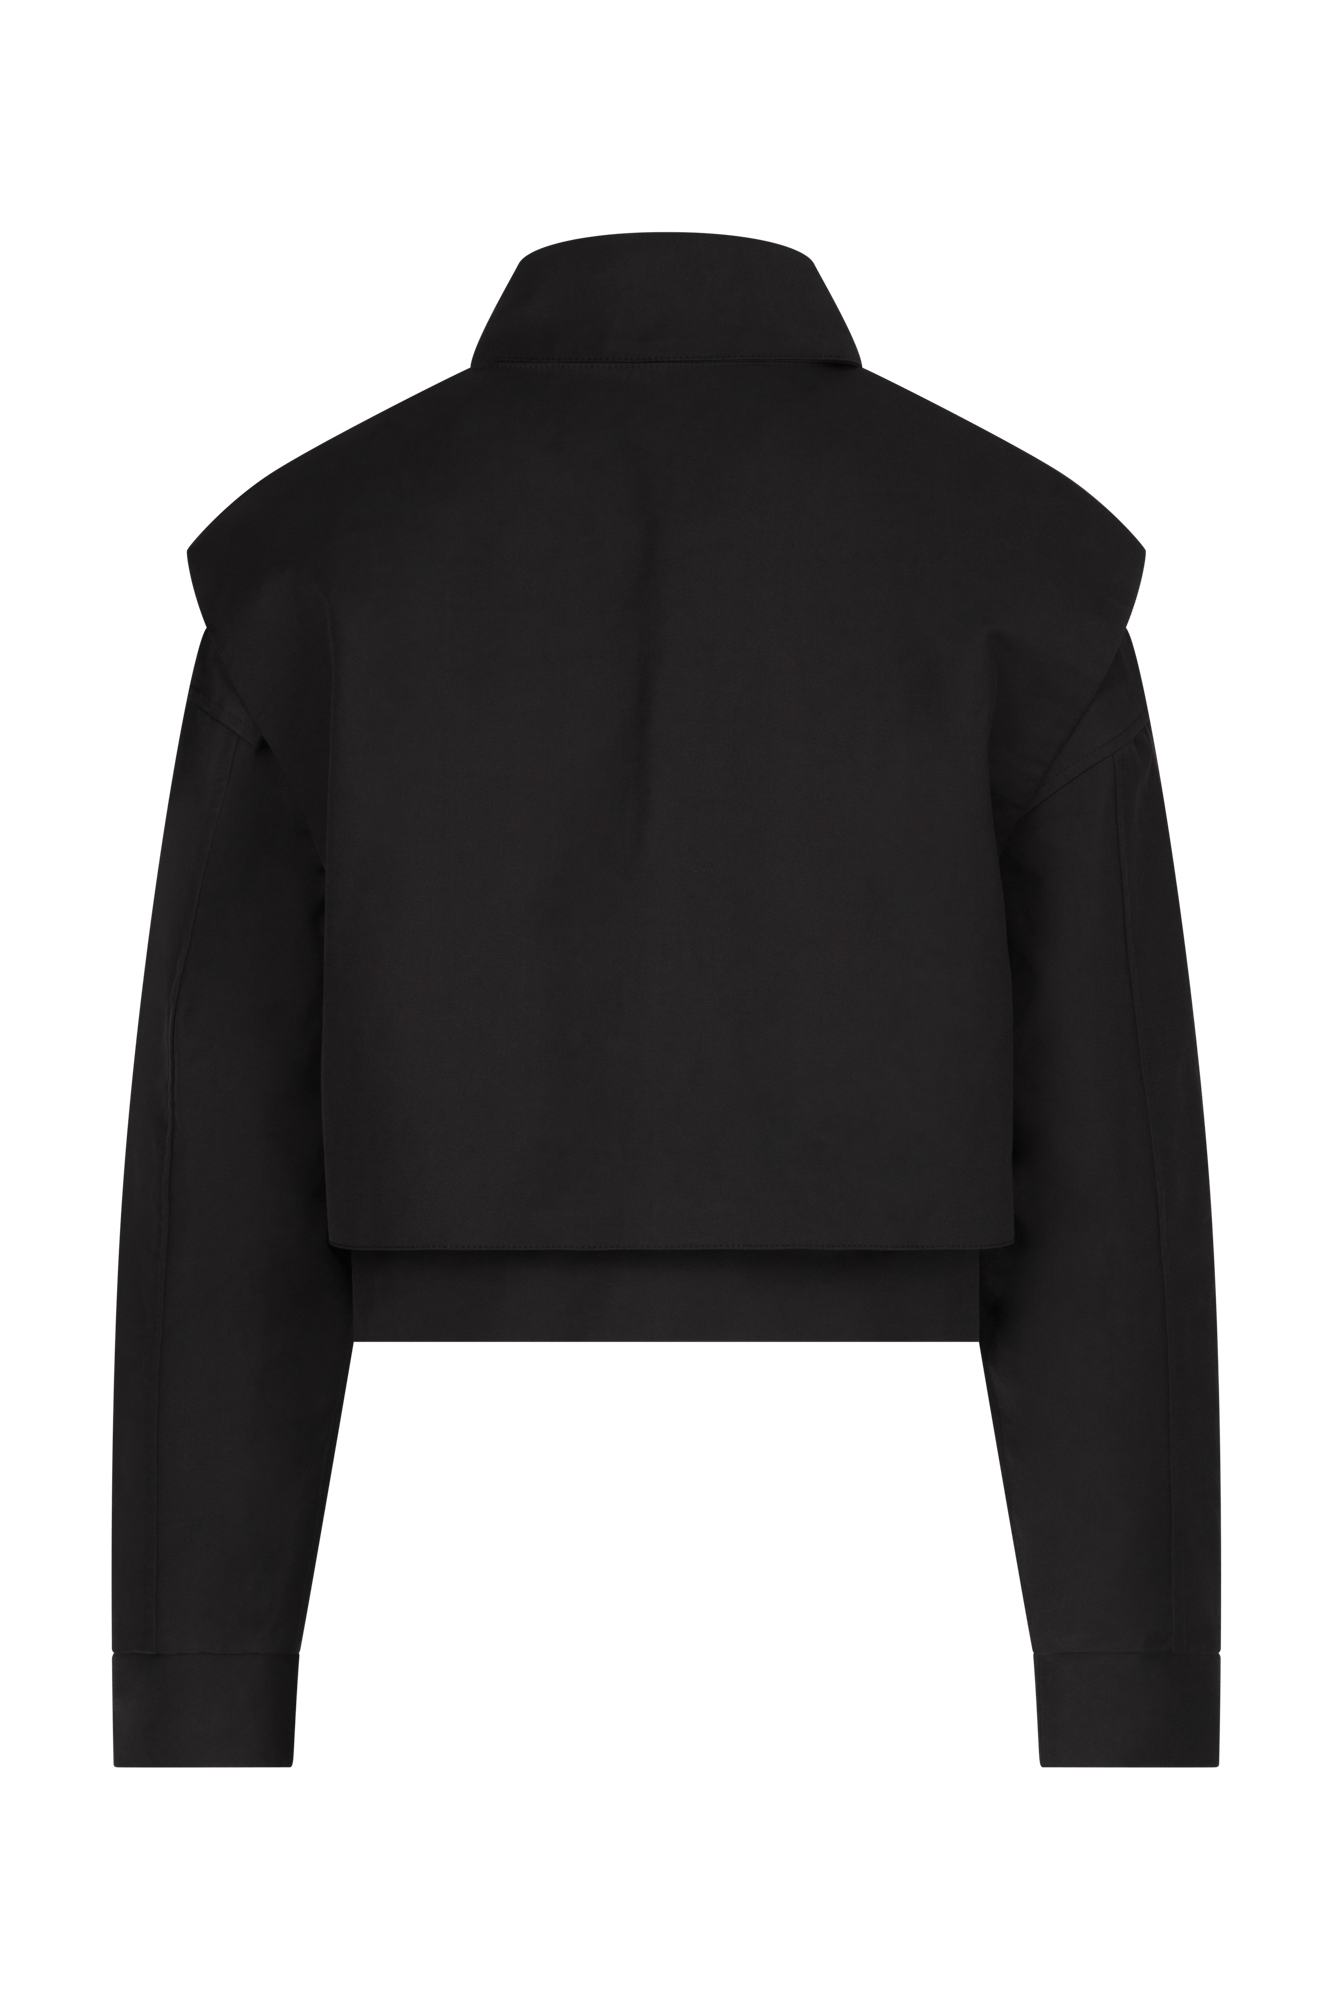 Double Layered Black Jacket